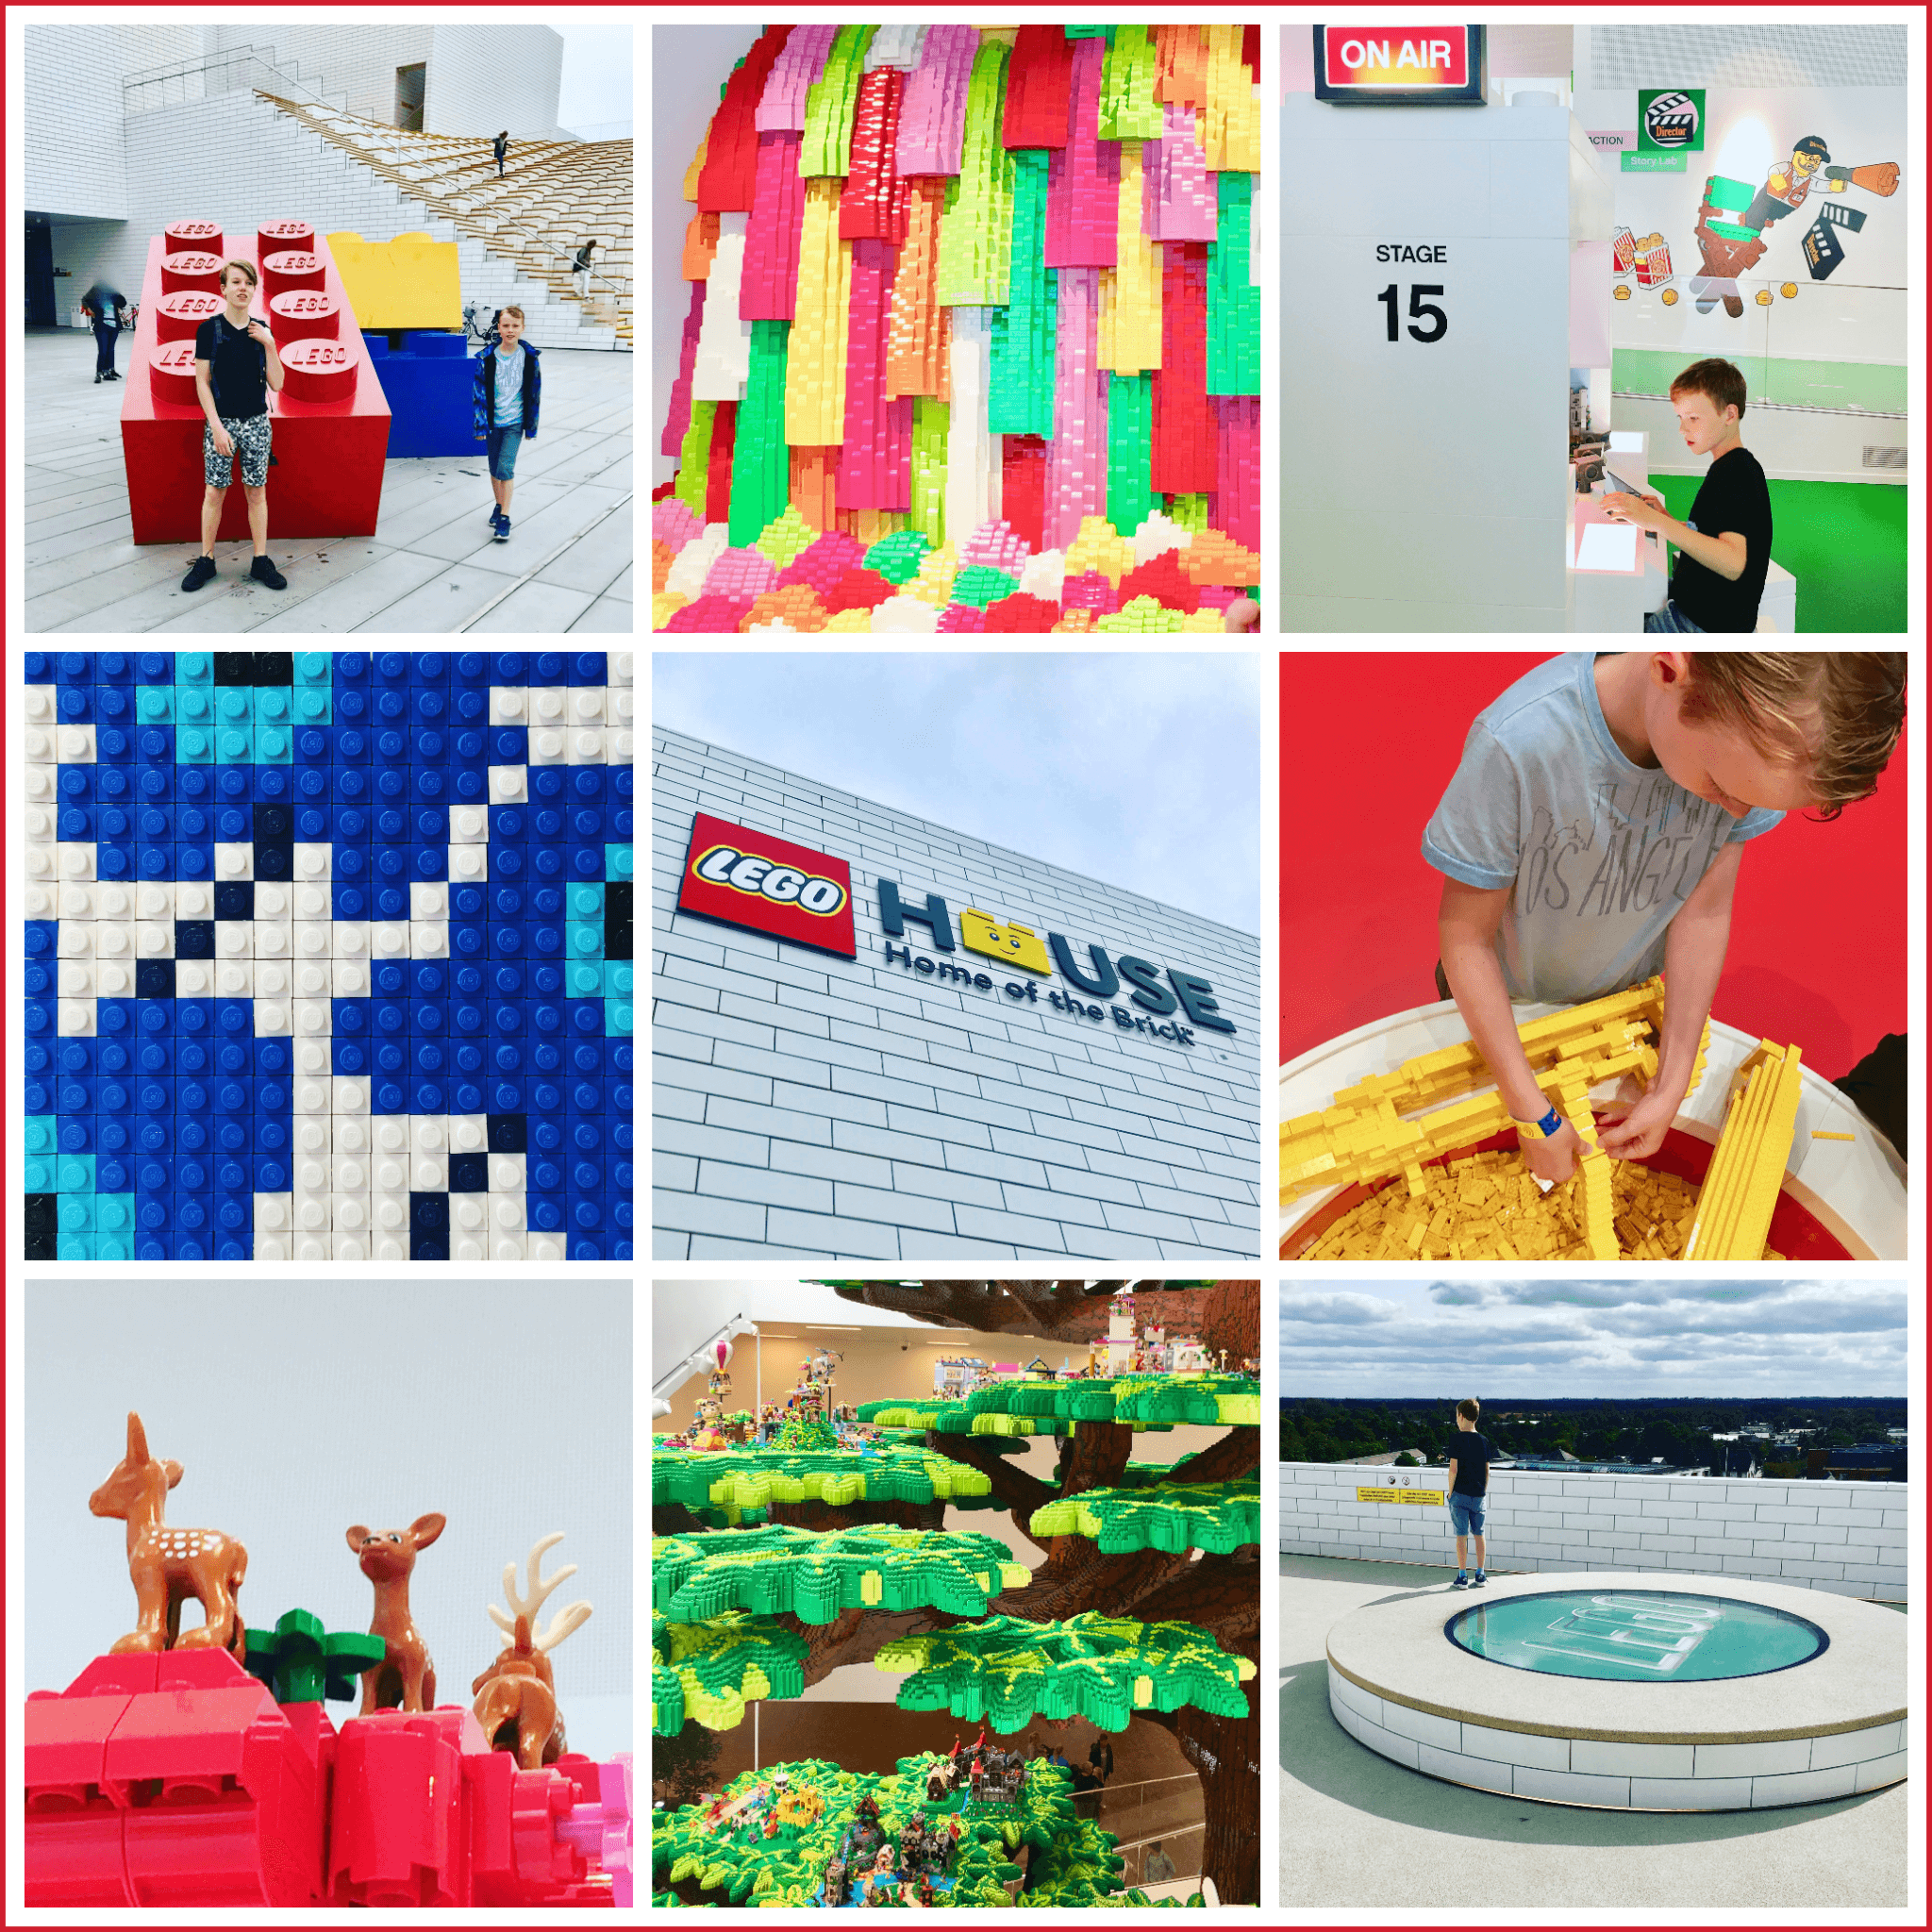 LEGO House: vlakbij Legoland en een must voor de fans